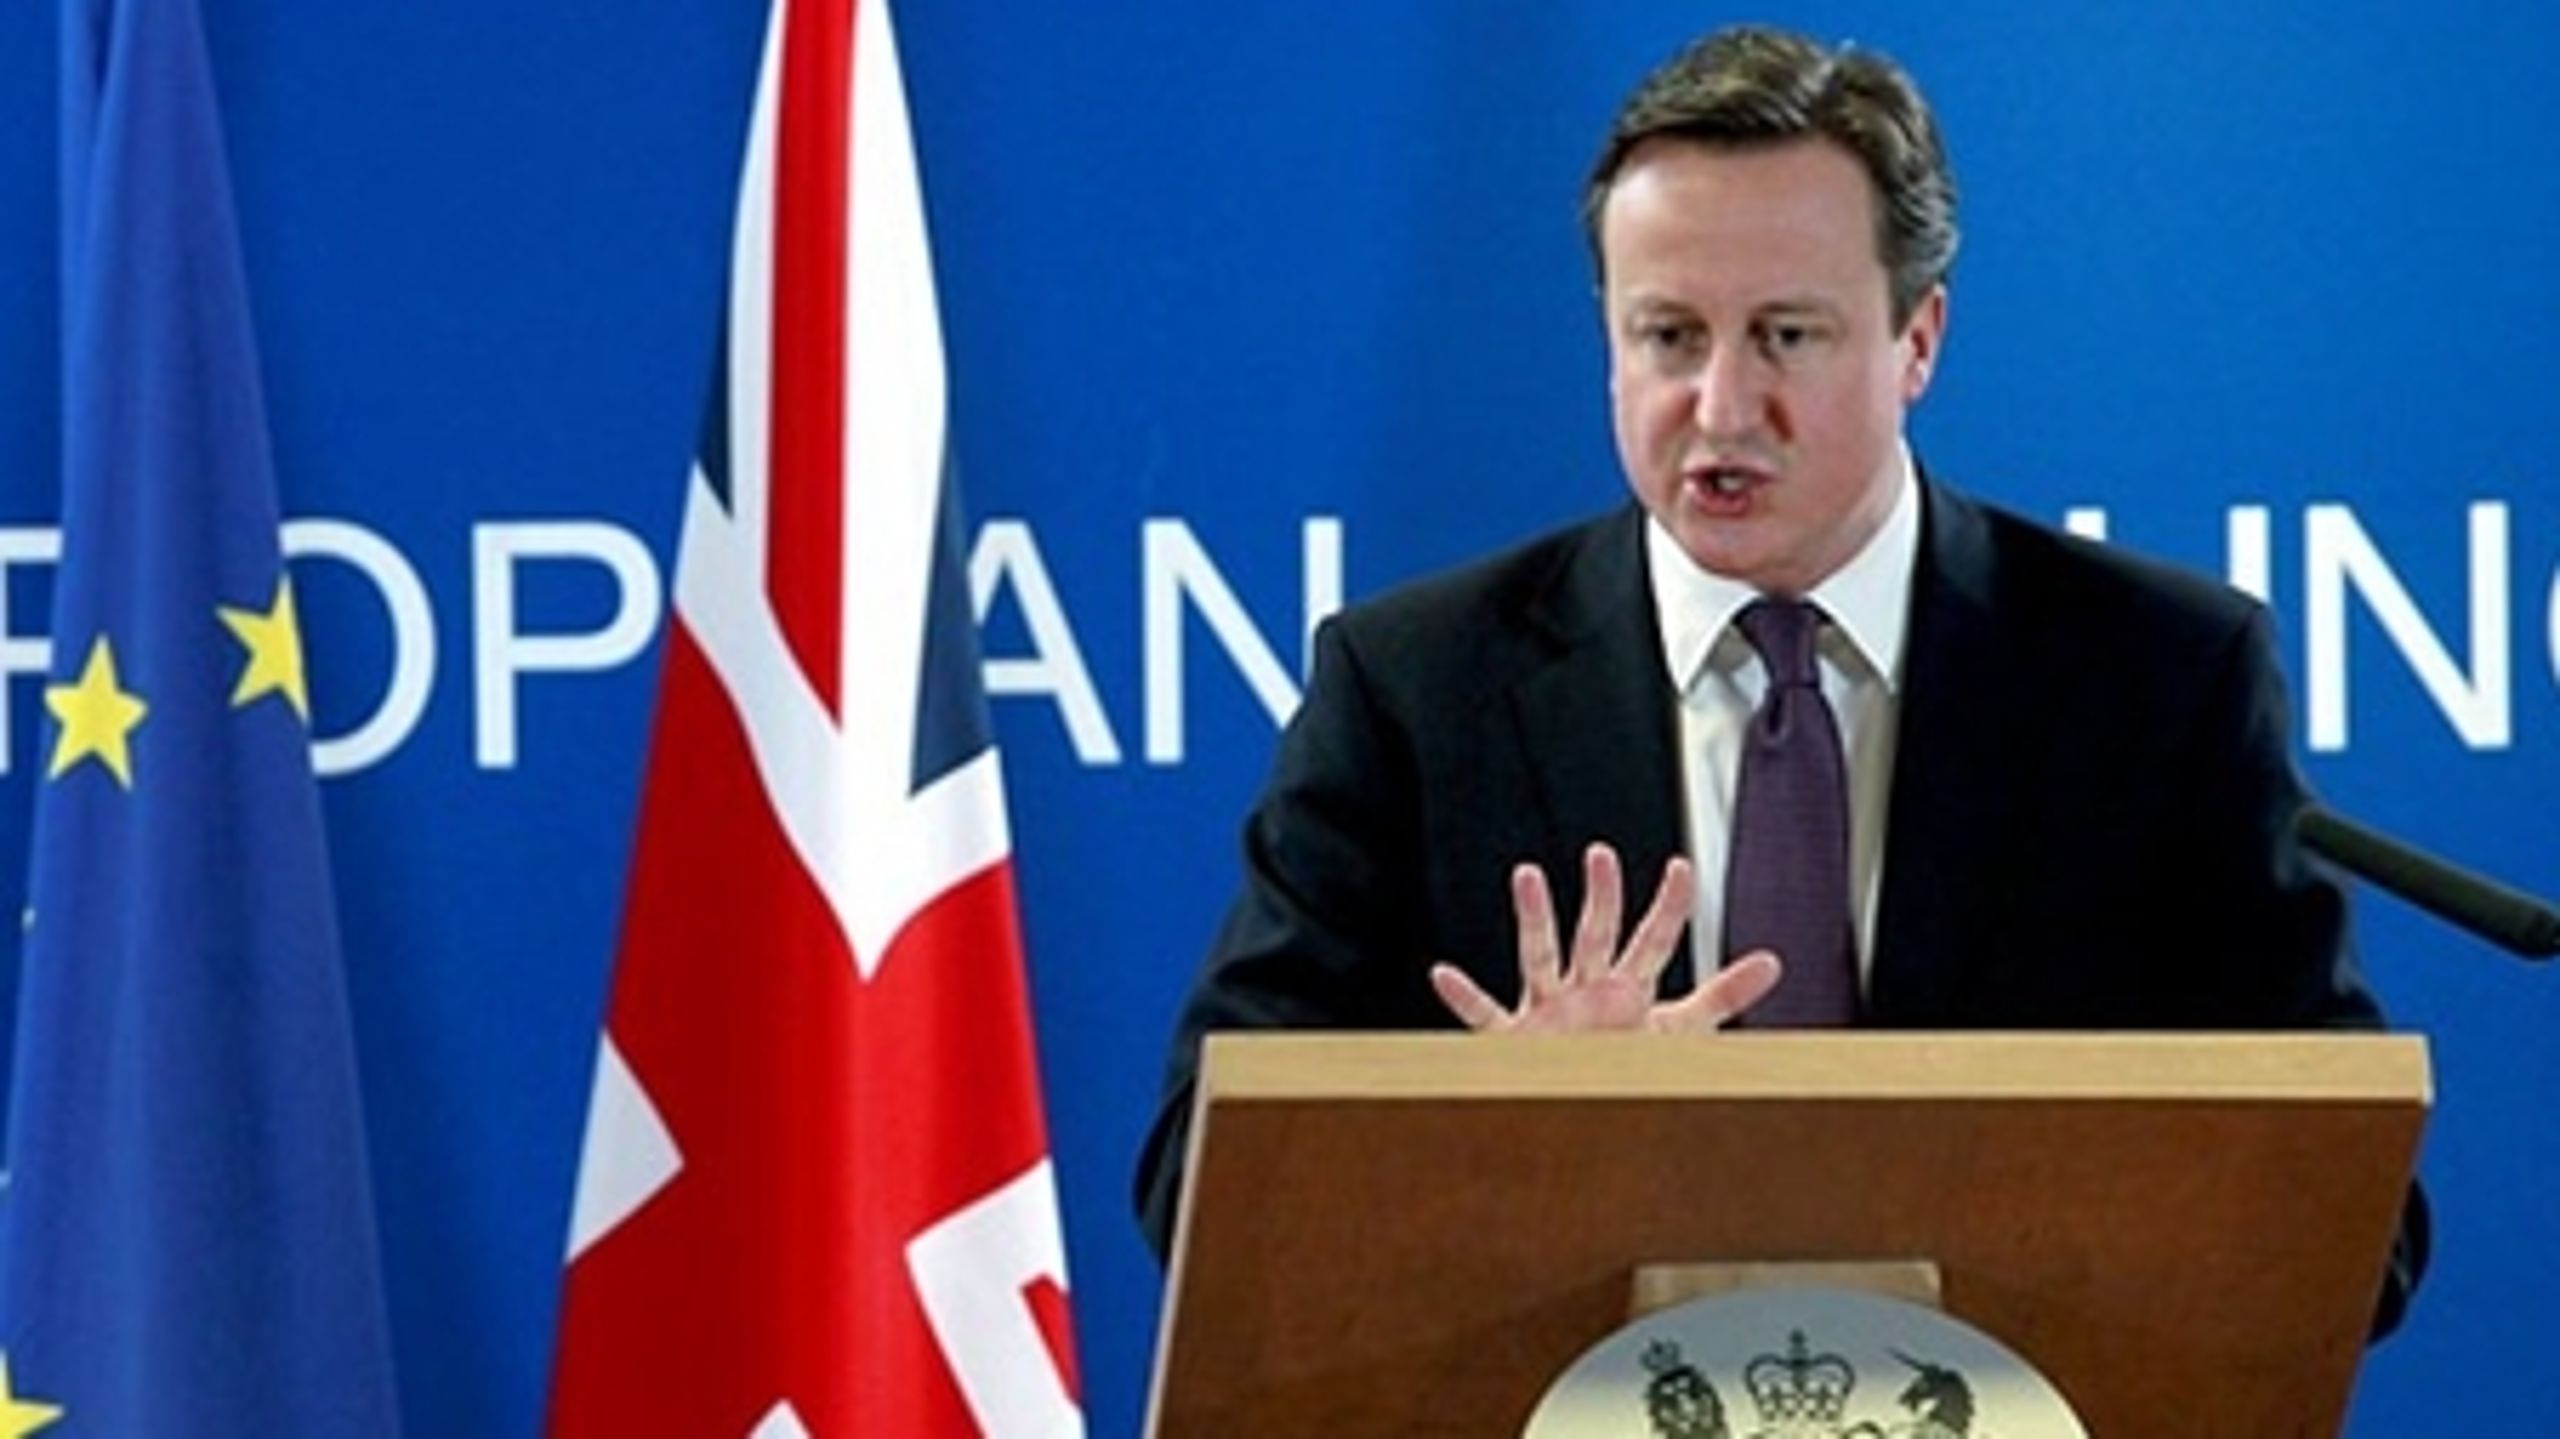 Danmark har ikke ønsket at bidrage til premierminister David Camerons undersøgelse af Storbritanniens forhold til EU.